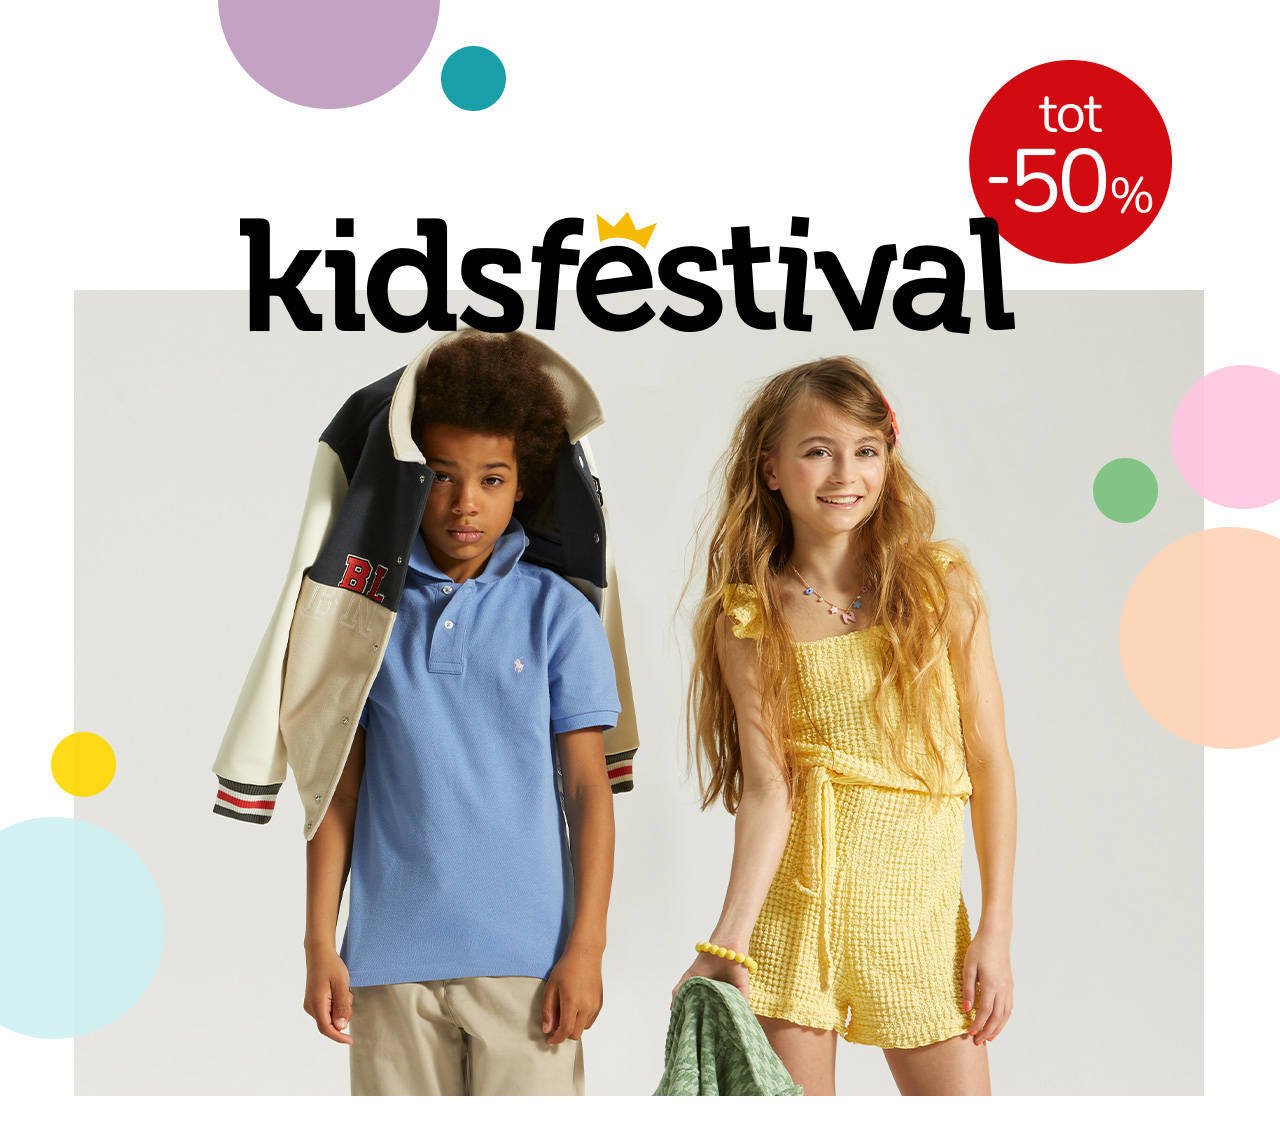 Kidsfestival